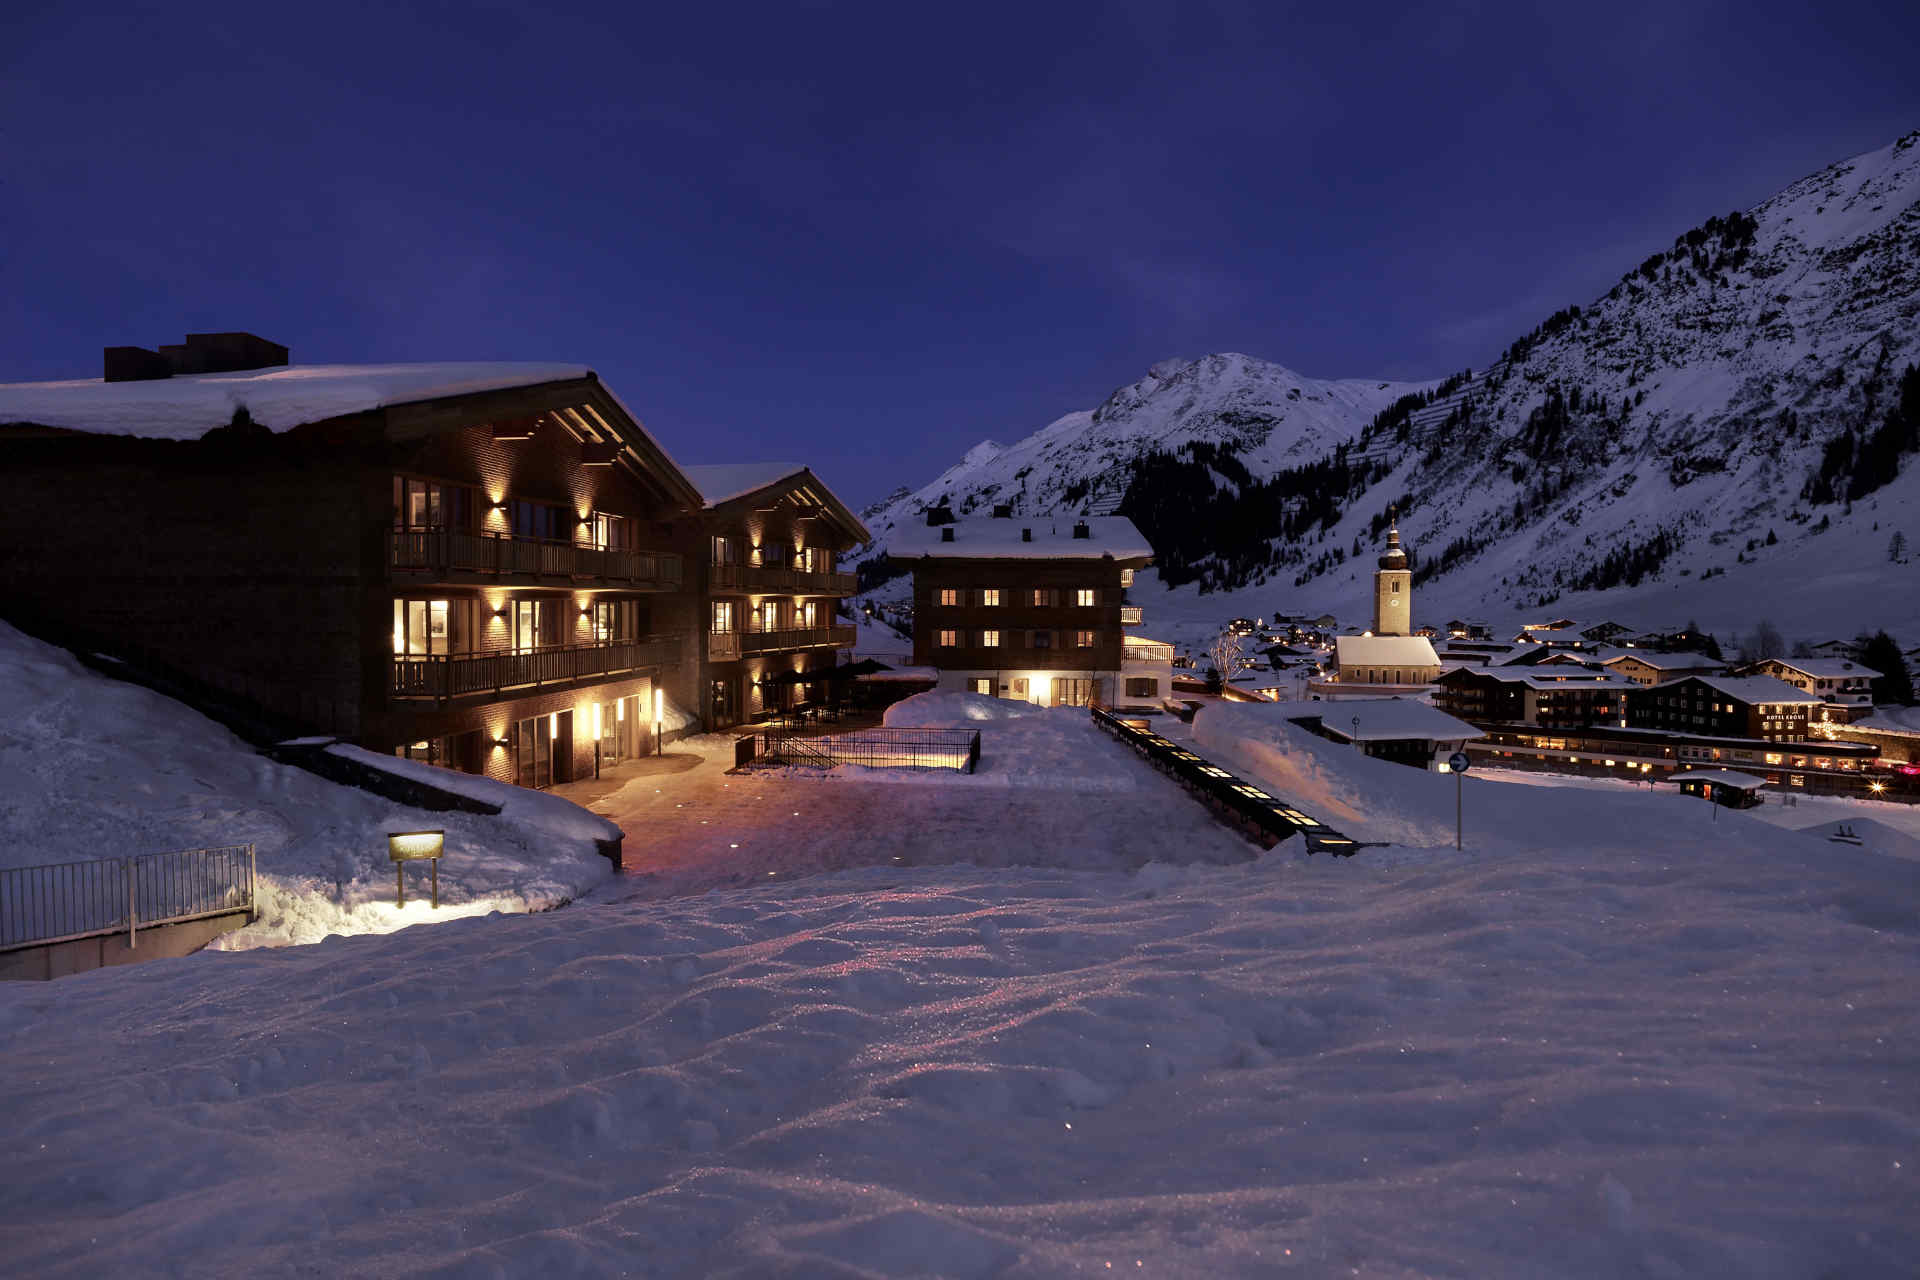 Das Luxushotel und Chalet liegt in Lech am Arlberg.© Aurelio Lech